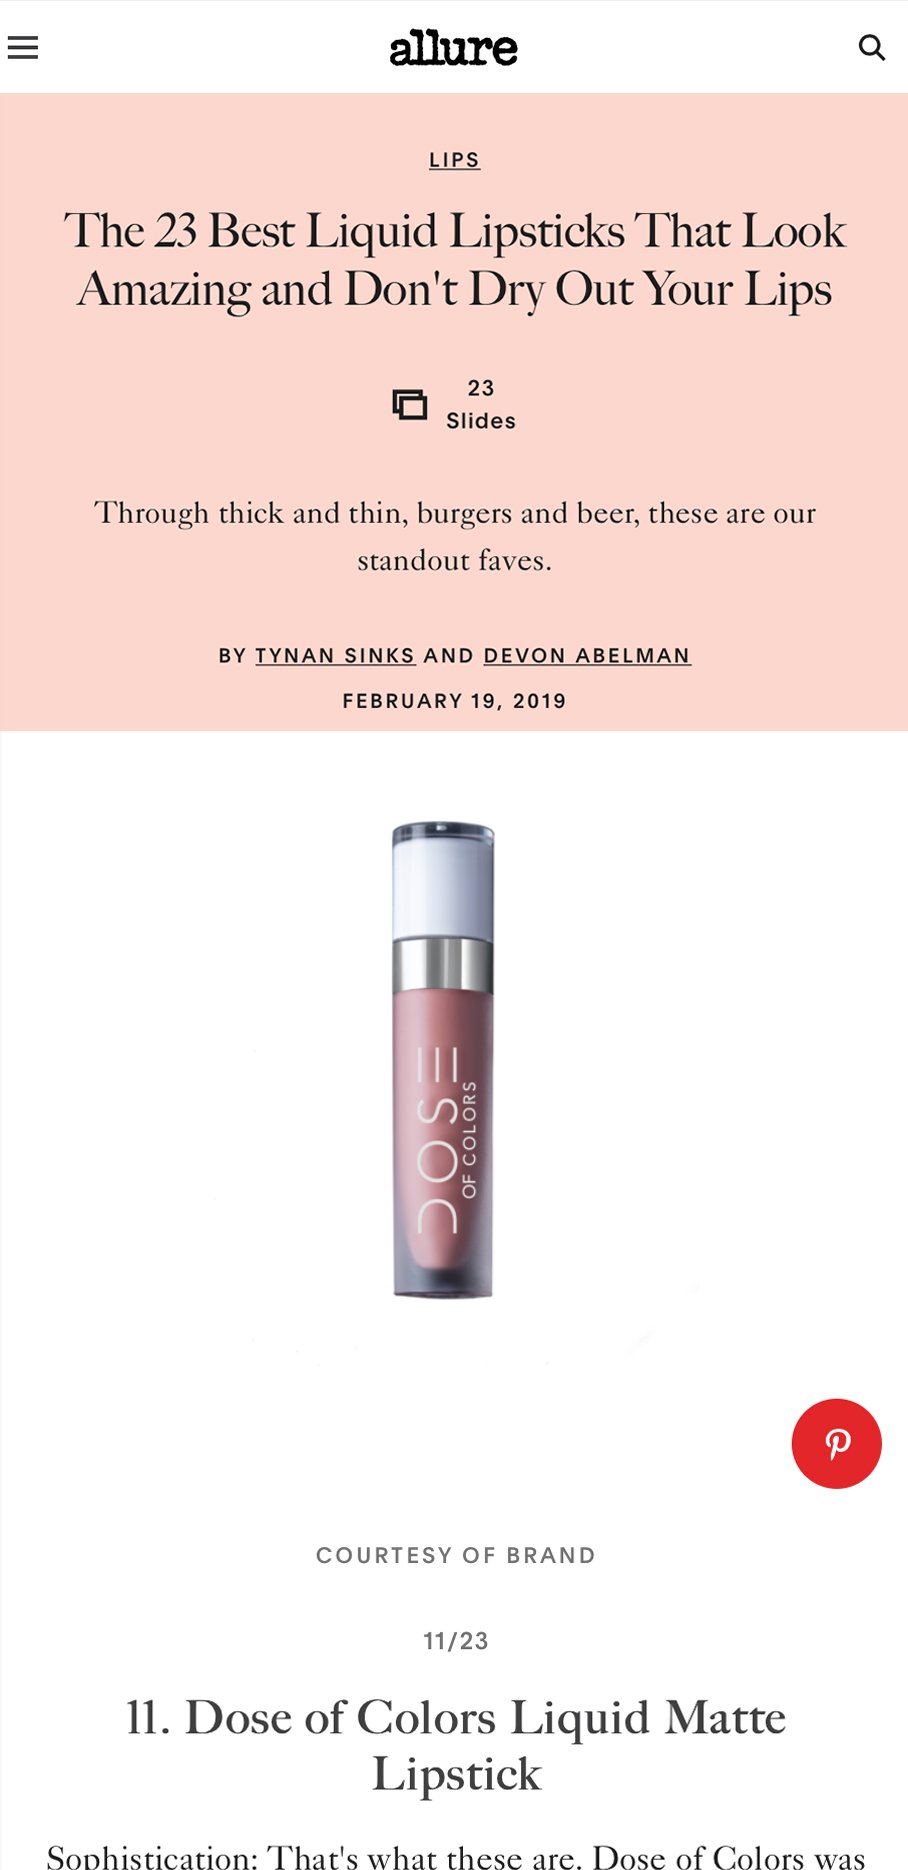 allure - 23 Best Liquid Matte Lipsticks